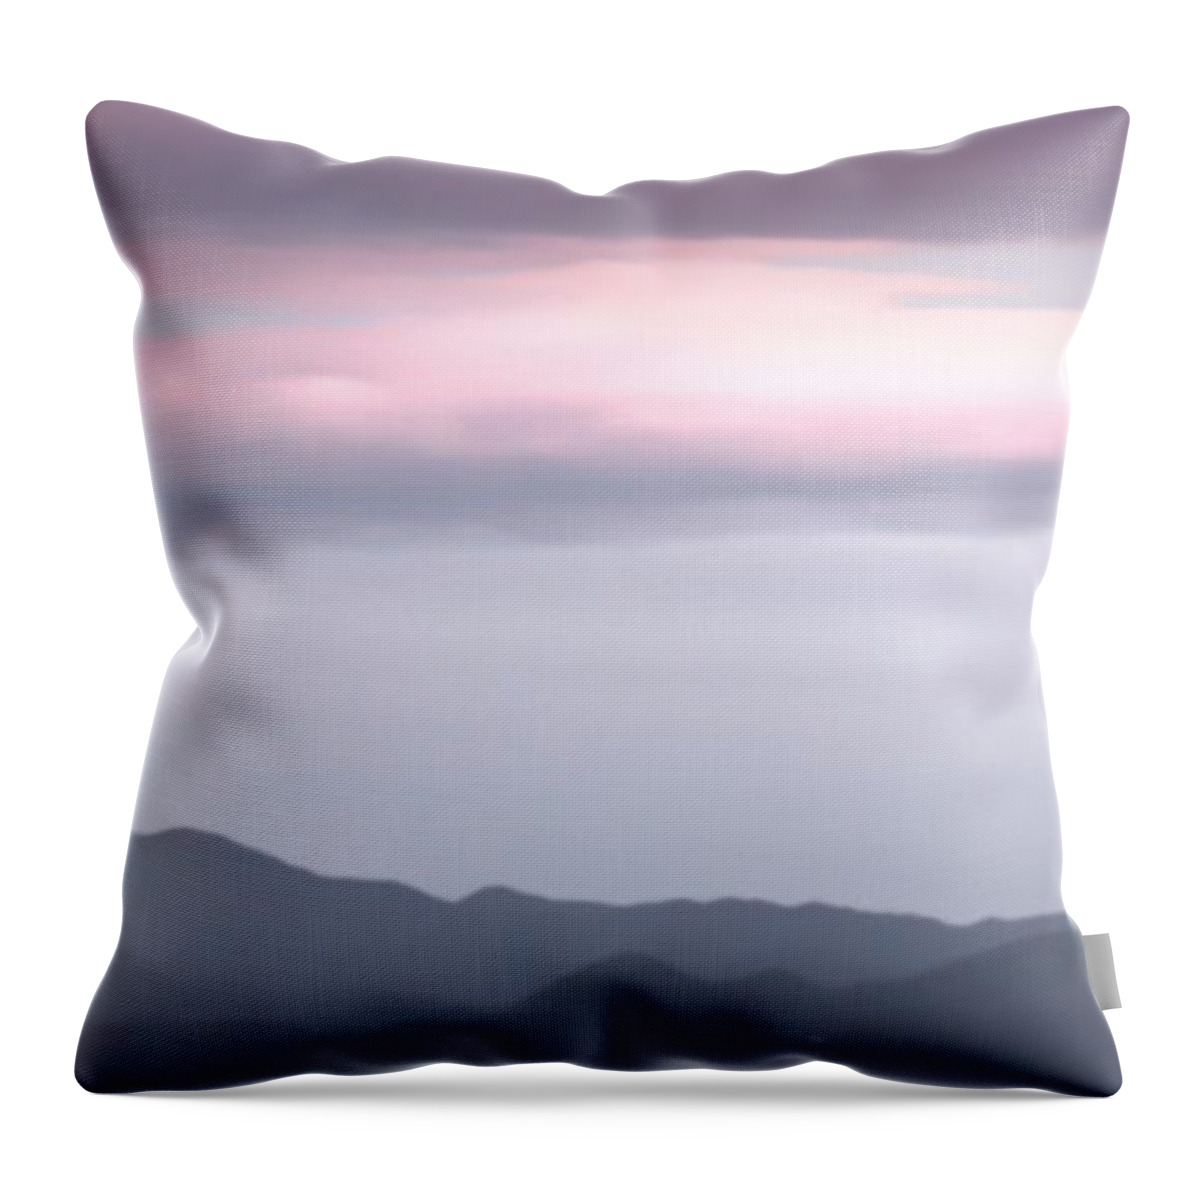 Landscape Throw Pillow featuring the digital art De Seda by Auranatura Art